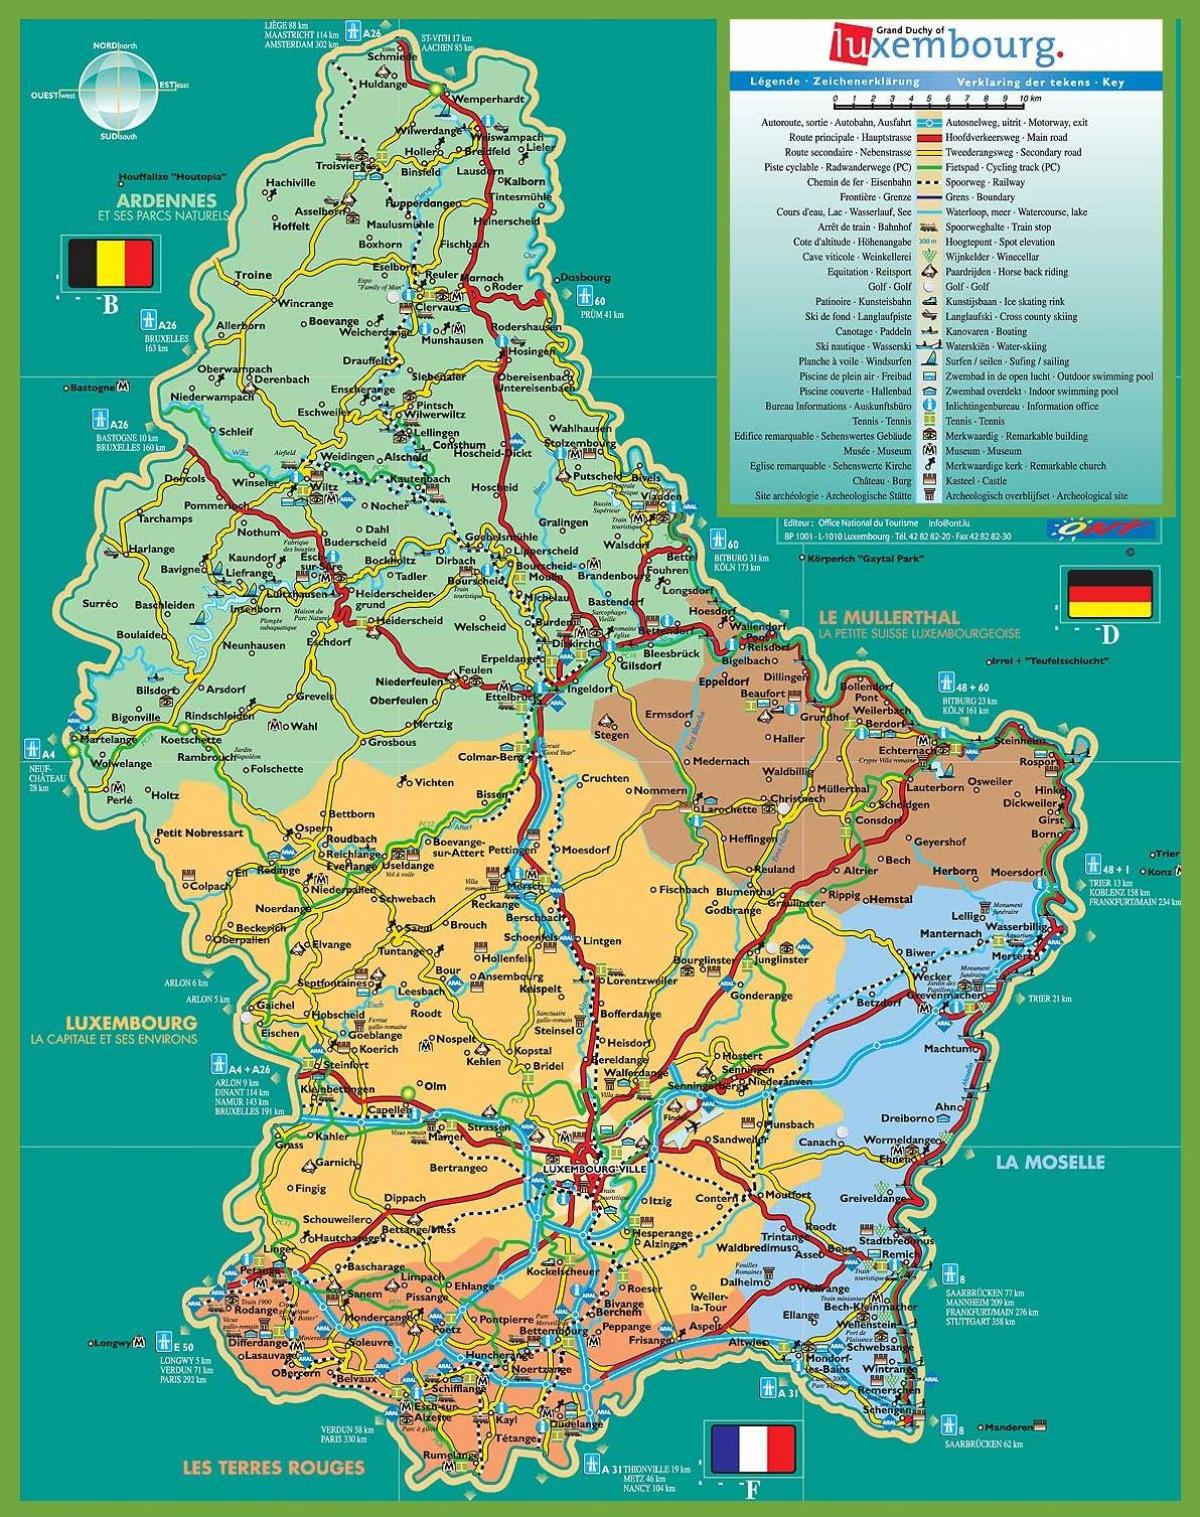 Cidade de luxemburgo mapa turístico